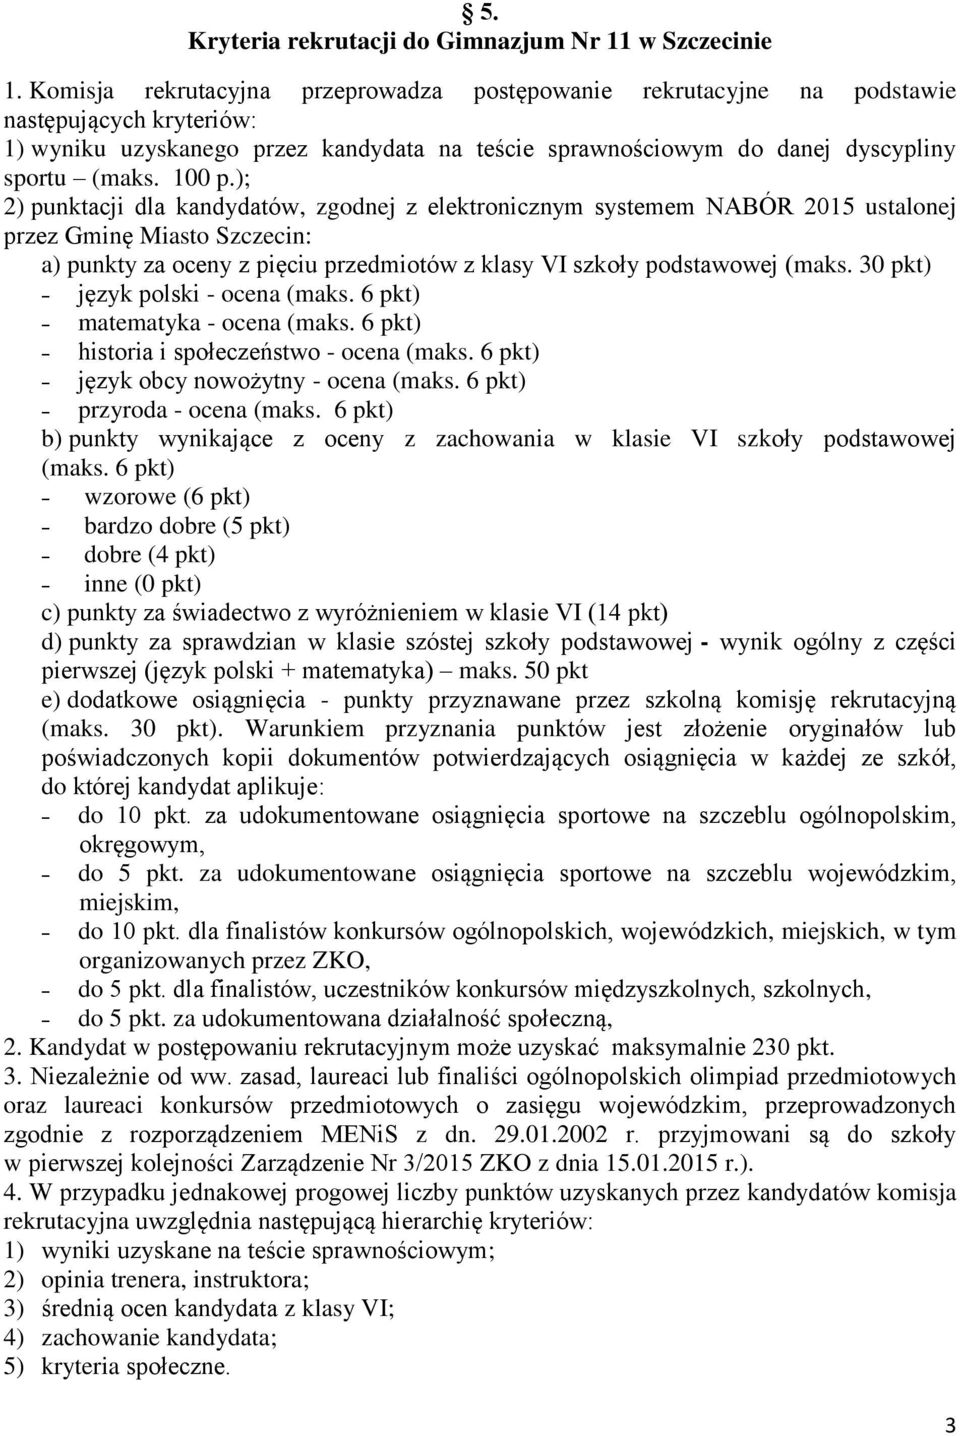 ); 2) punktacji dla kandydatów, zgodnej z elektronicznym systemem NABÓR 2015 ustalonej przez Gminę Miasto Szczecin: a) punkty za oceny z pięciu przedmiotów z klasy VI szkoły podstawowej (maks.